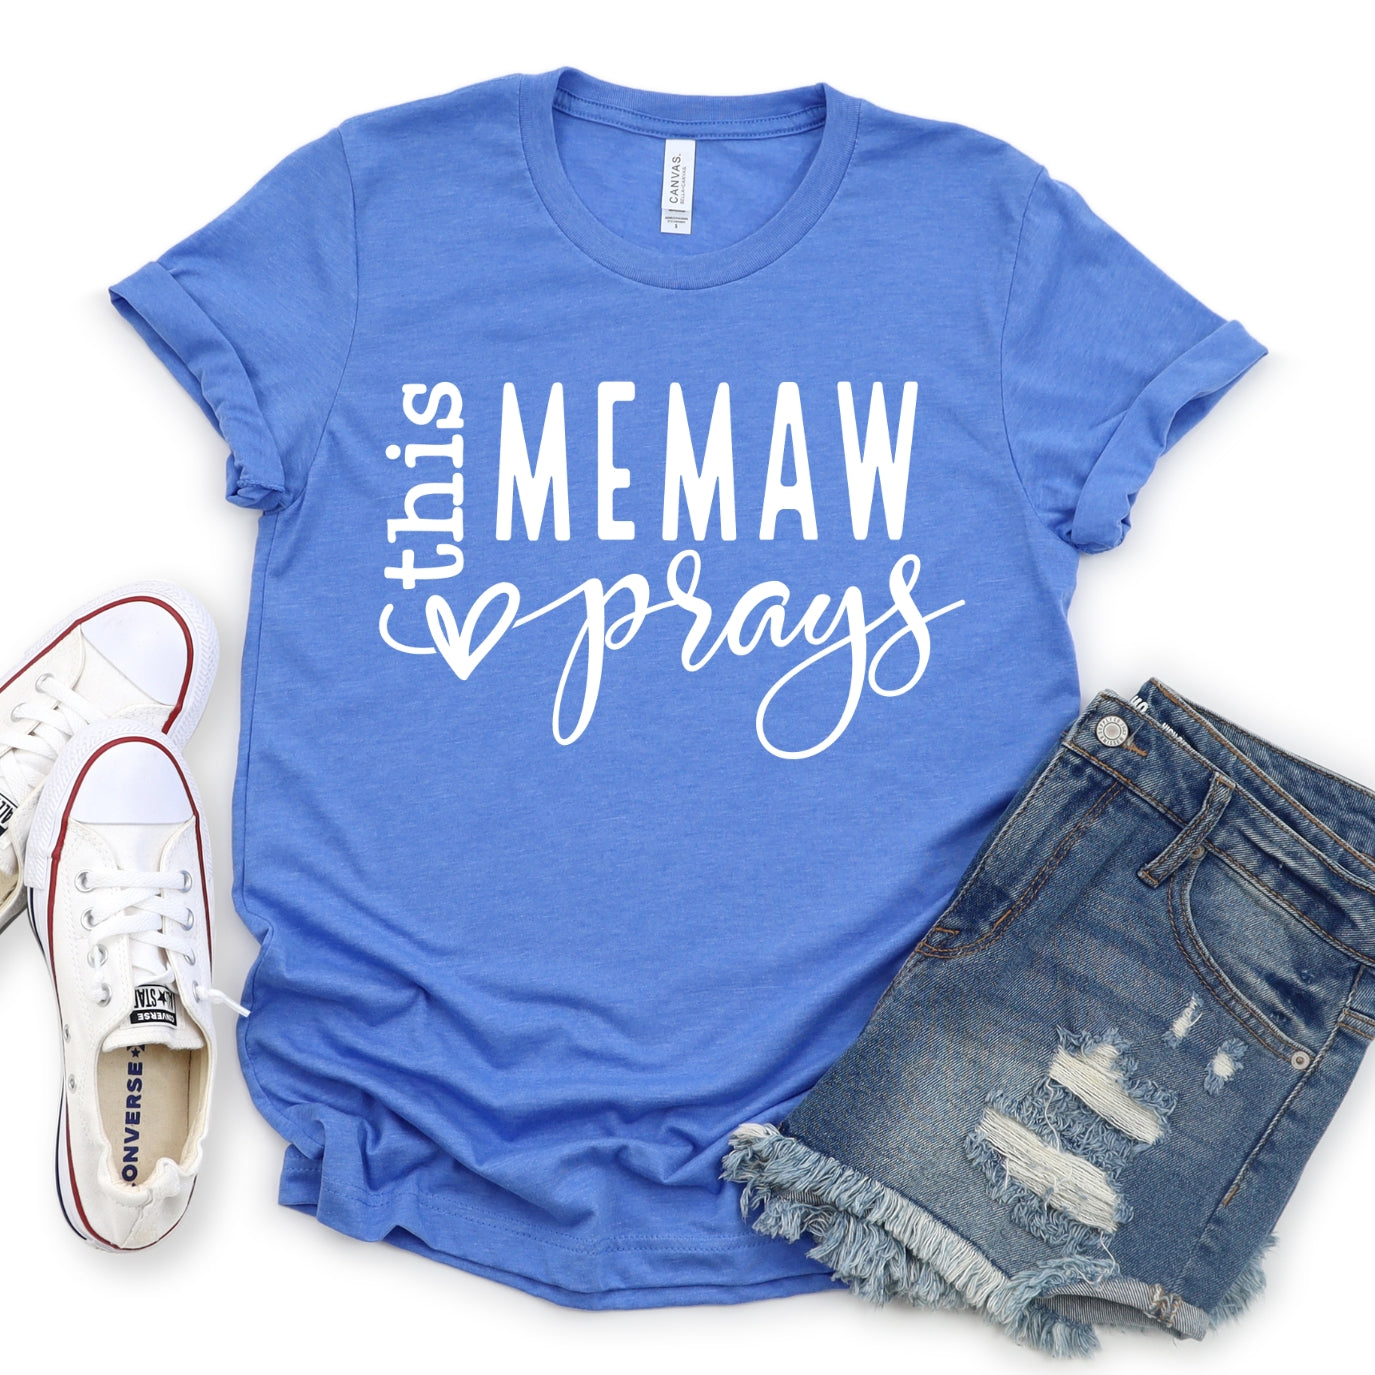 This MeMaw Prays Women's T-Shirt